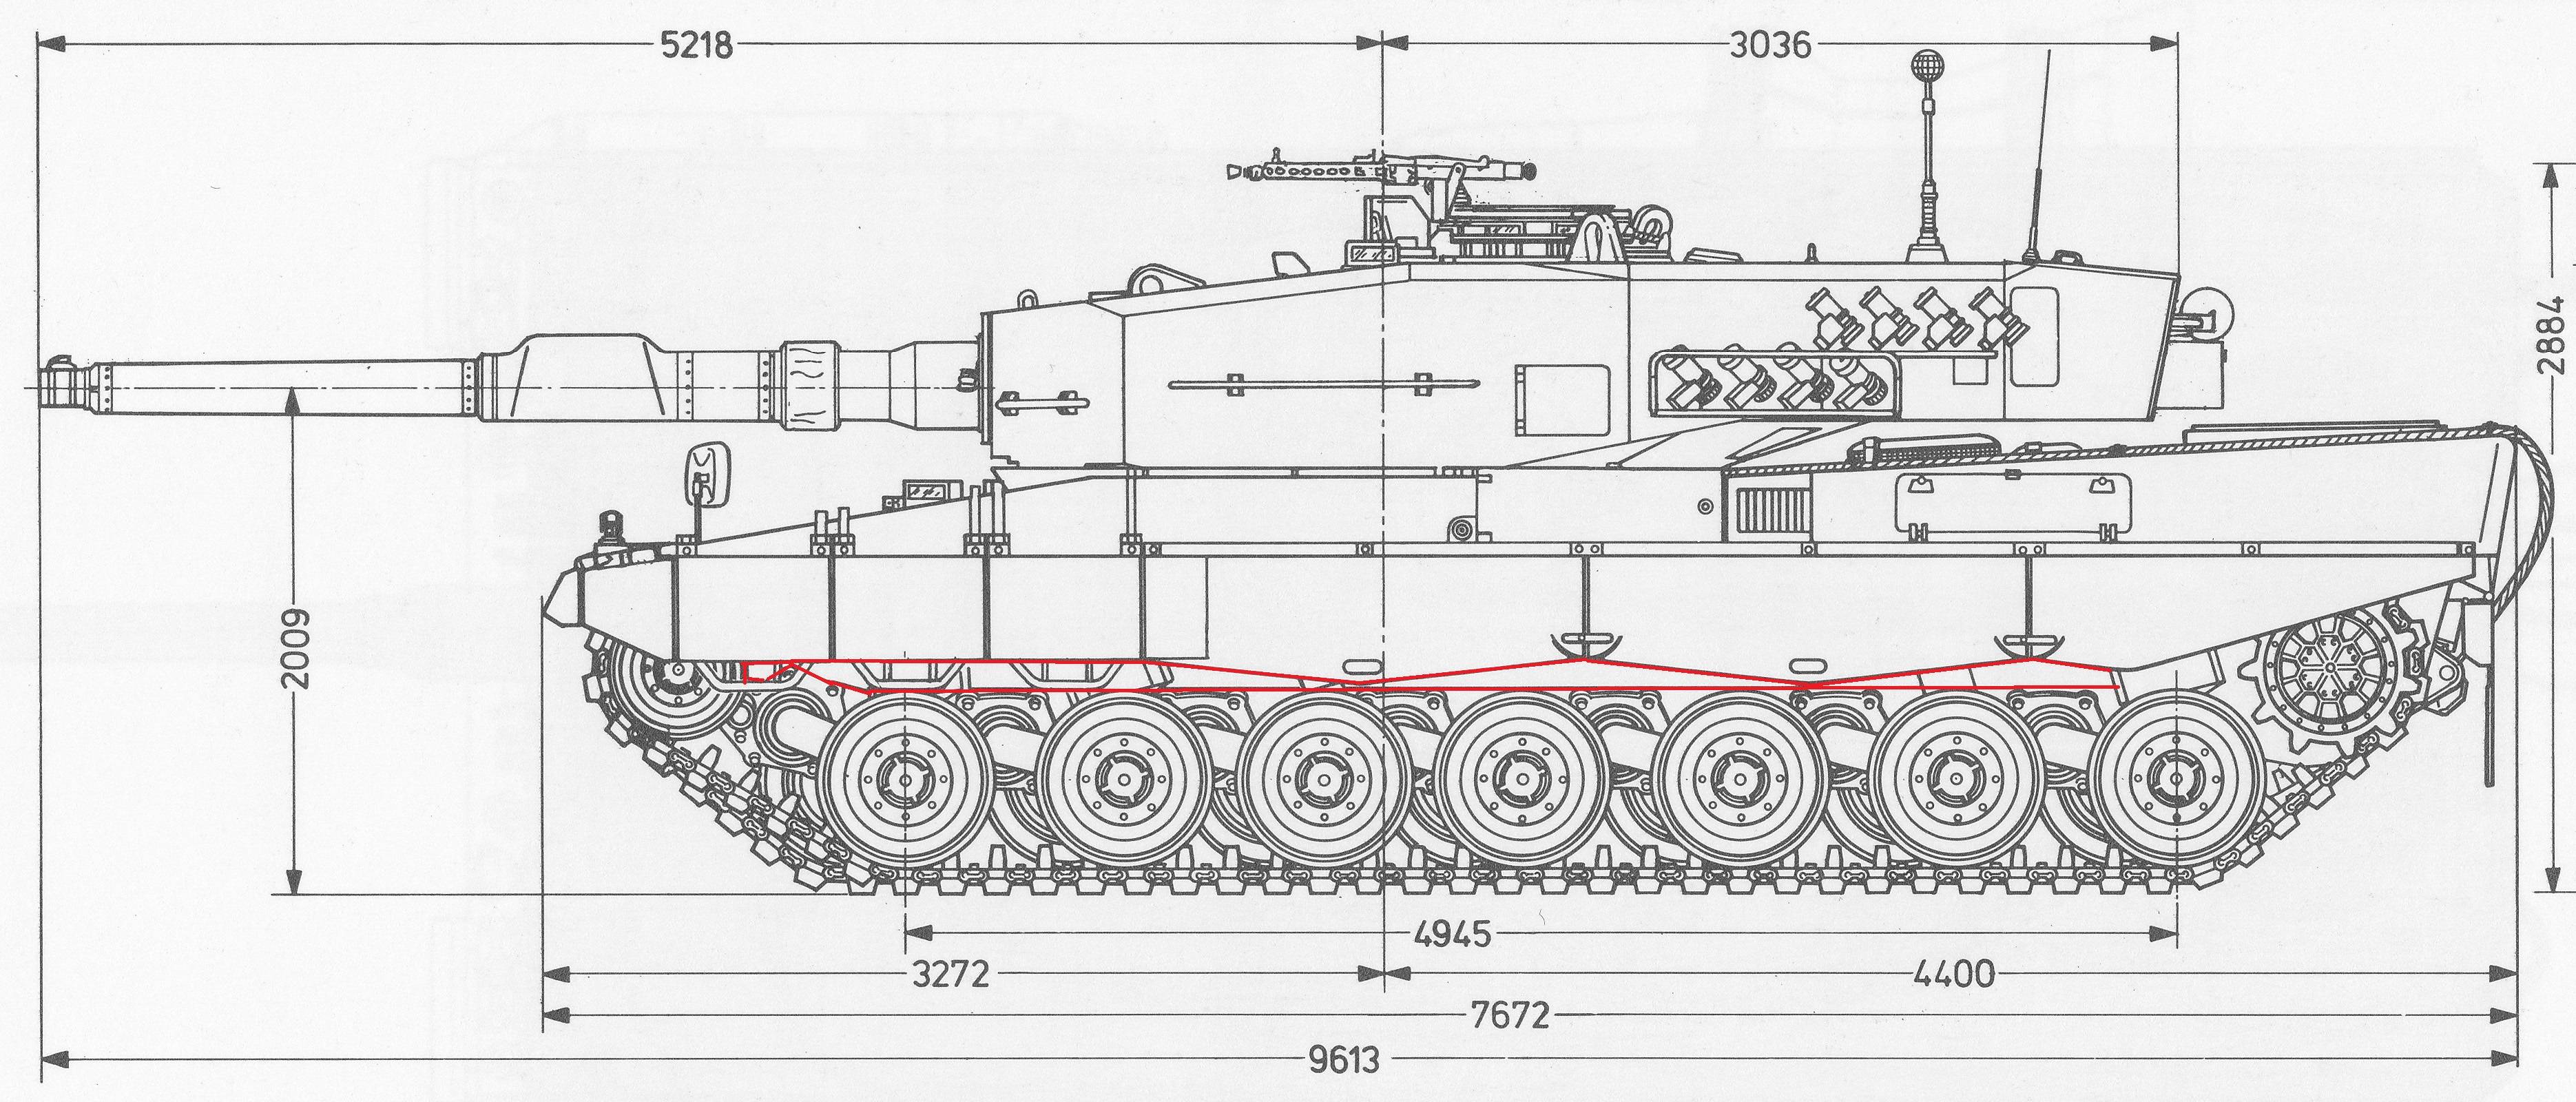 Основной боевой танк leopard 2 — викивоины